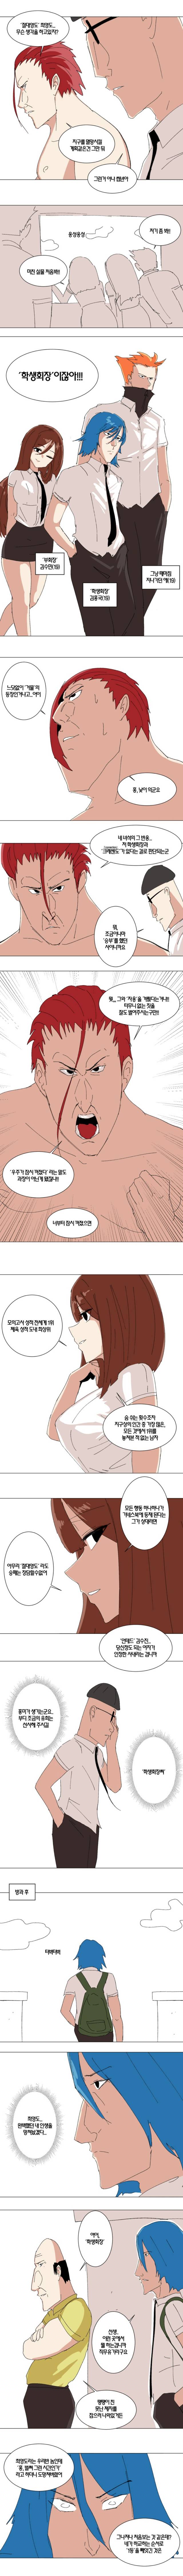 절대영도 최영도 - 학생회장(컬러) | 인스티즈